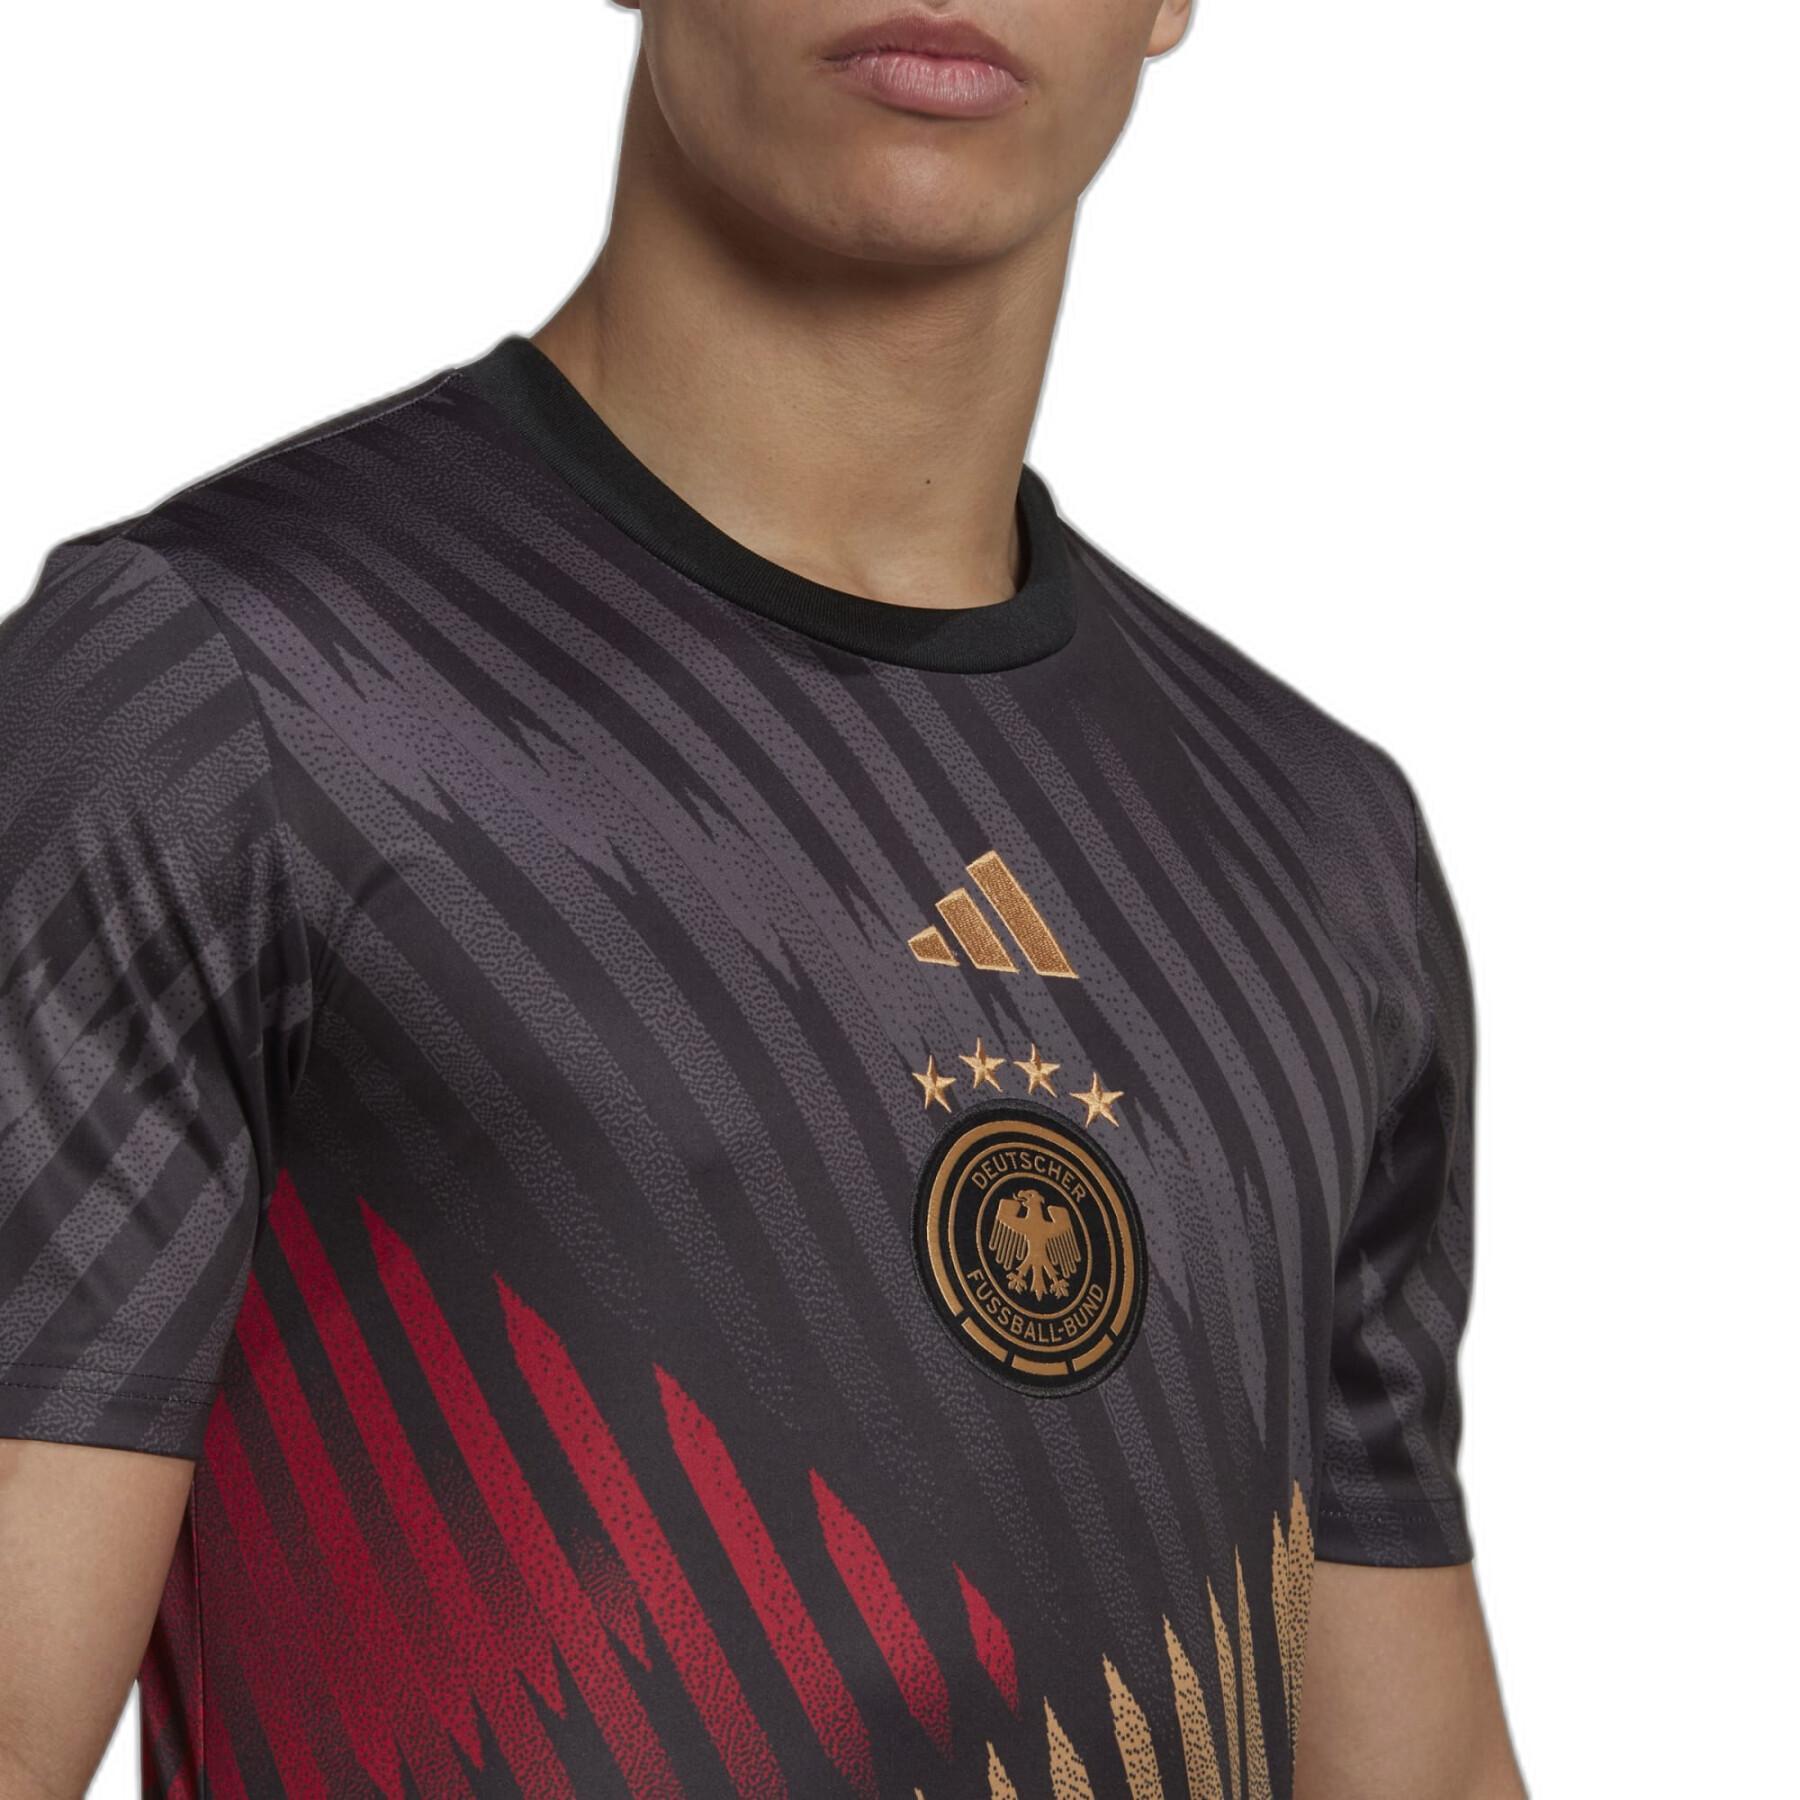 Koszulka przedmeczowa Mistrzostw Świata 2022 Allemagne